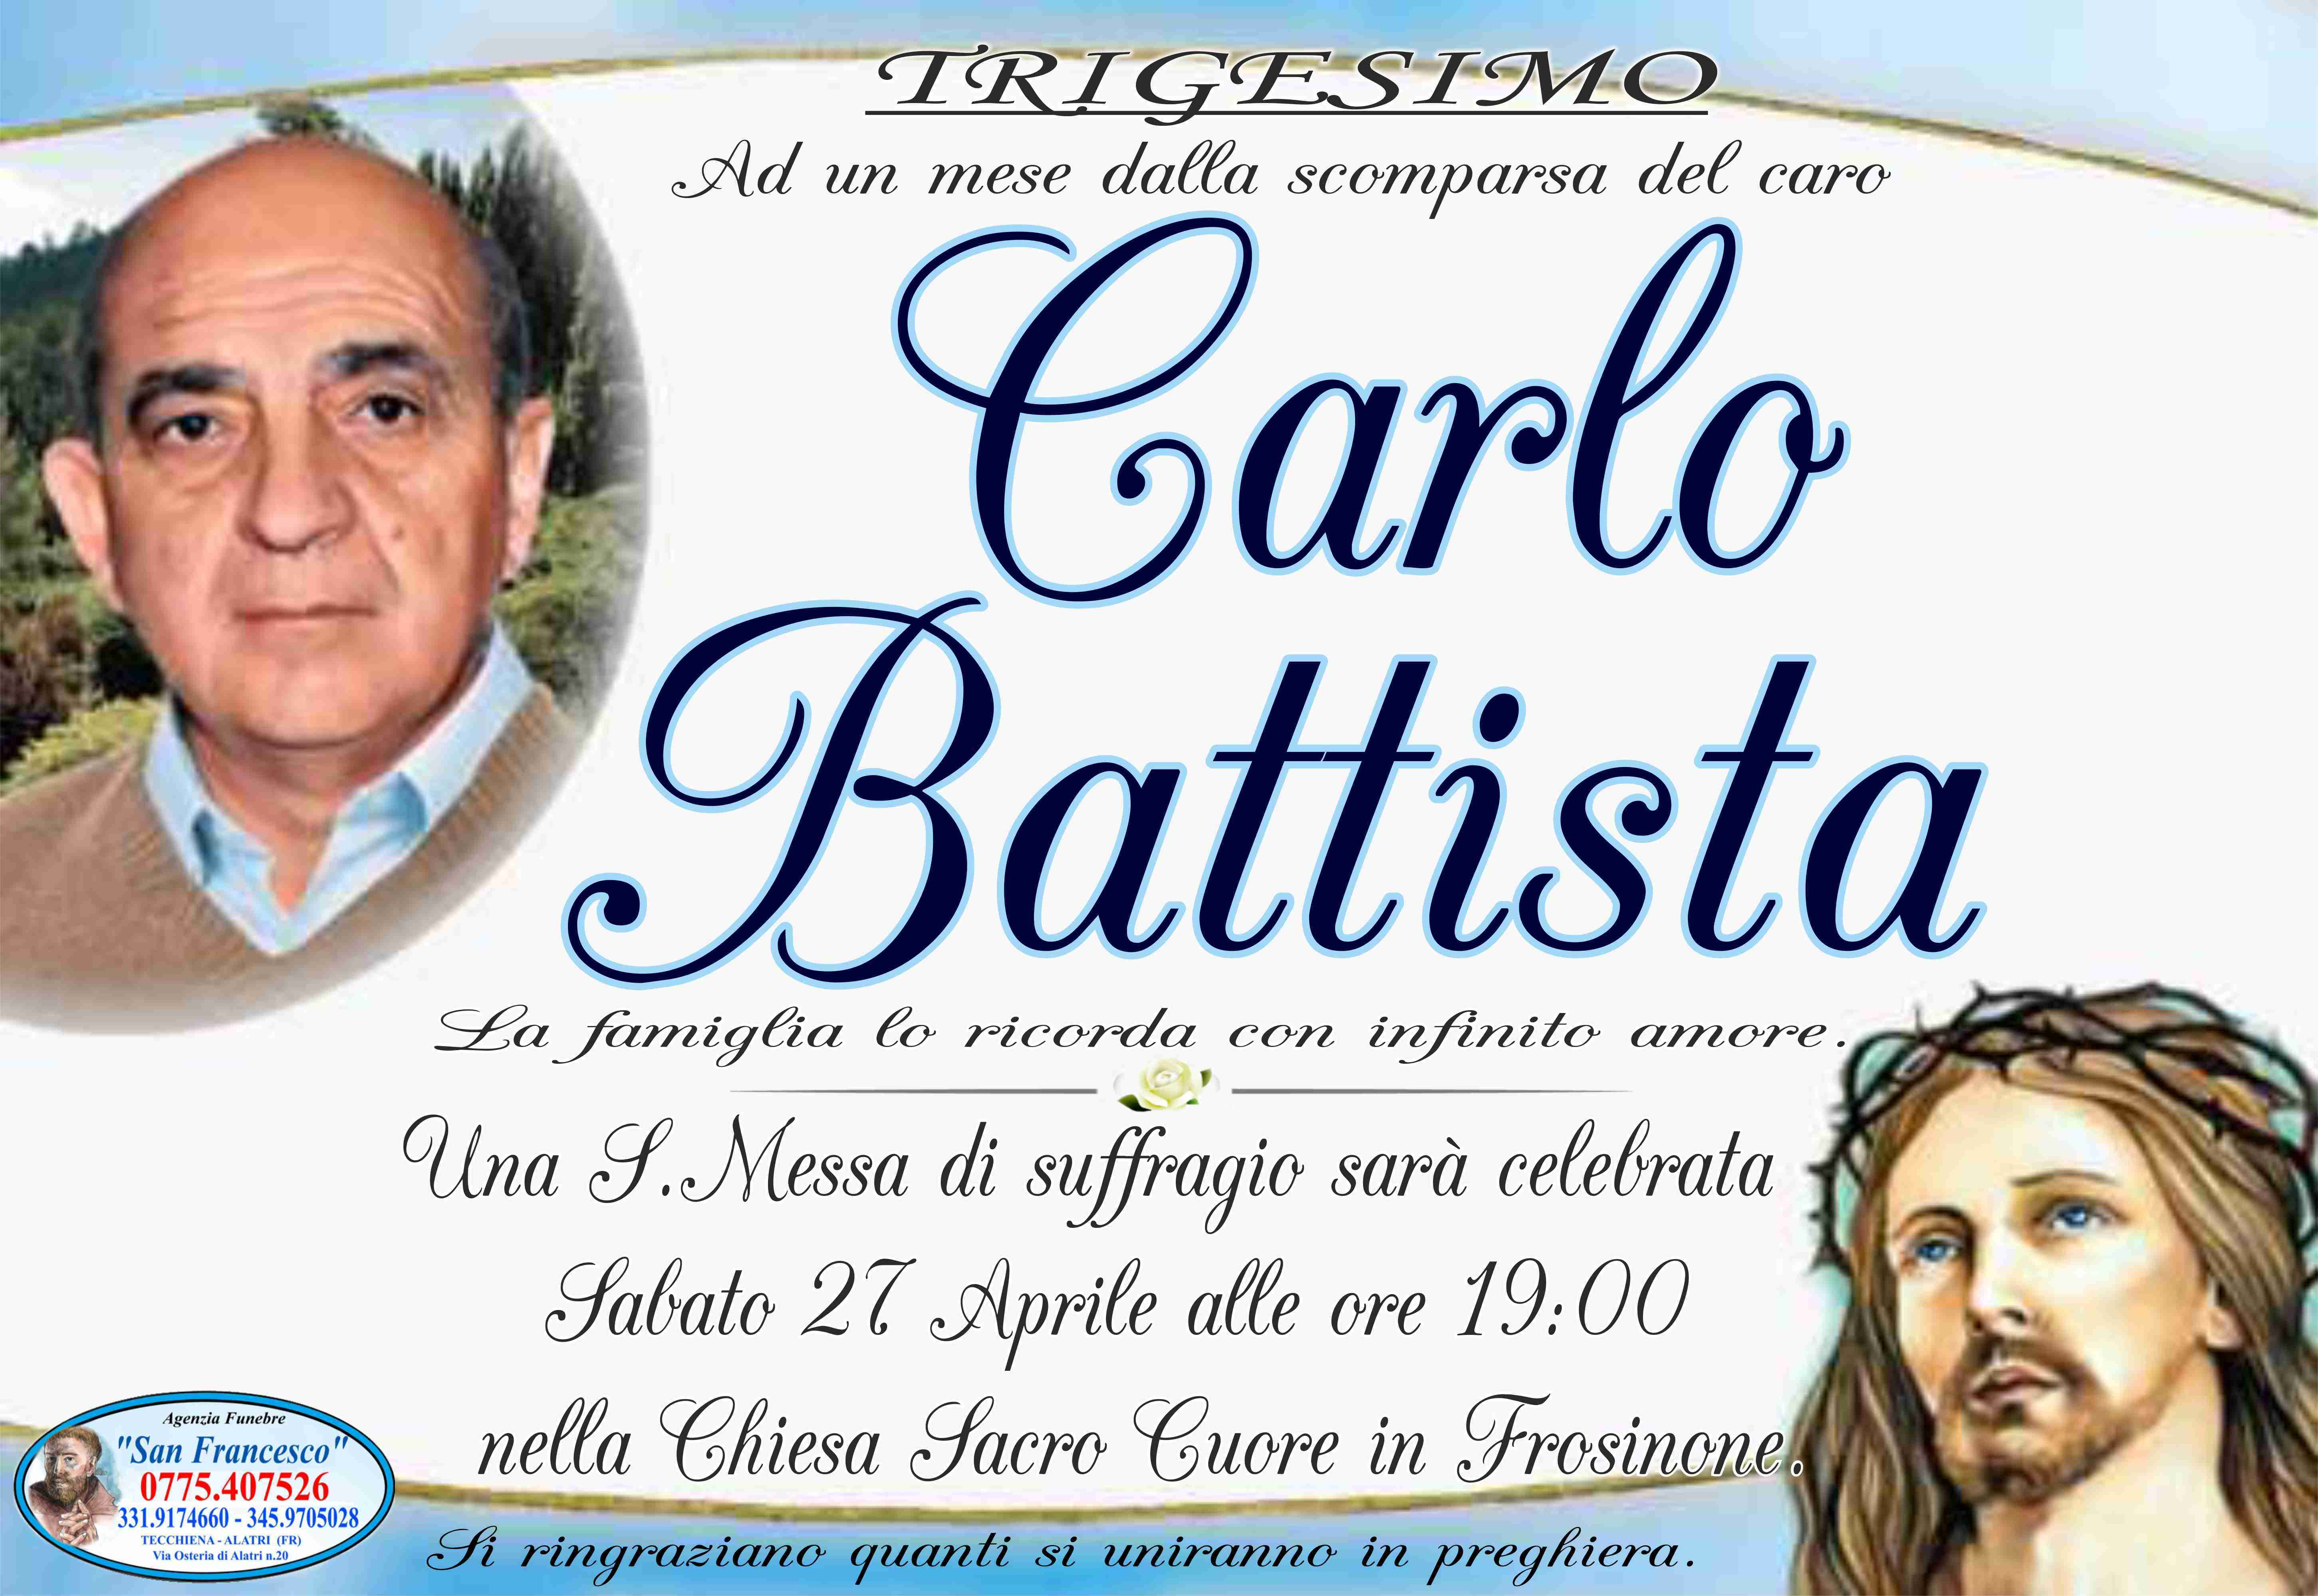 Carlo Battista